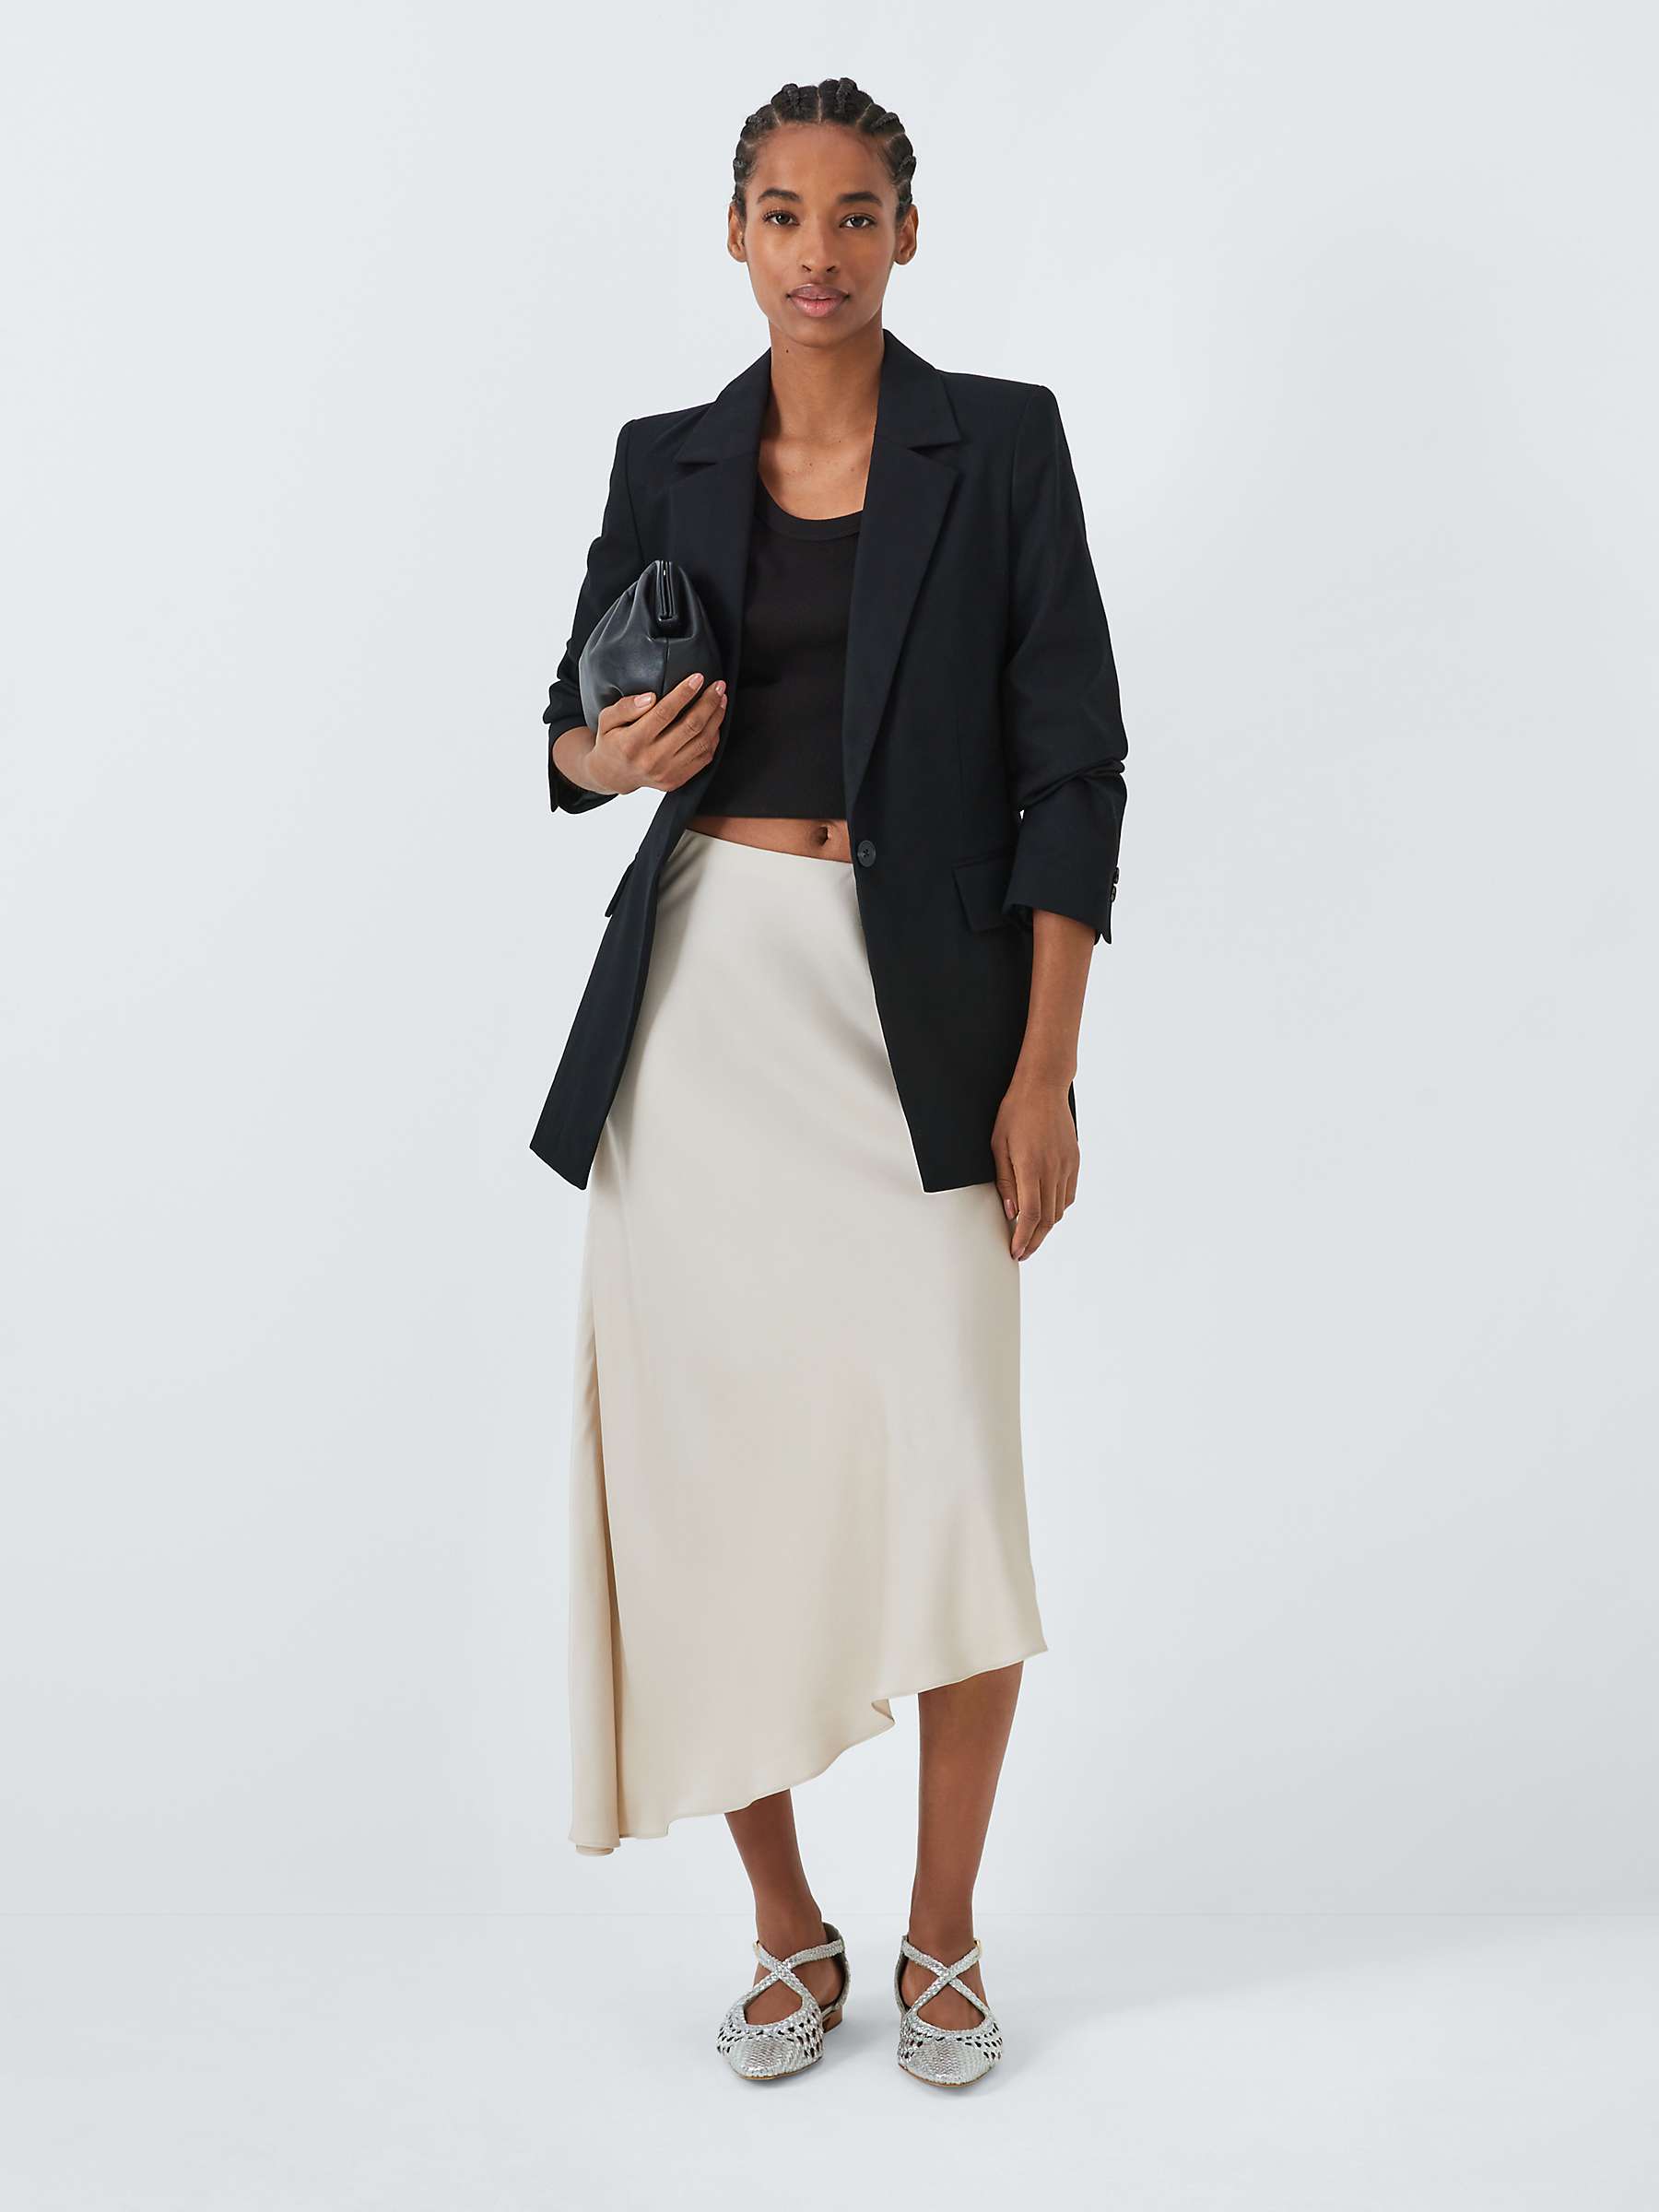 Buy Vivere By Savannah Miller Eden Satin Asymmetric Hem Midi Skirt Online at johnlewis.com